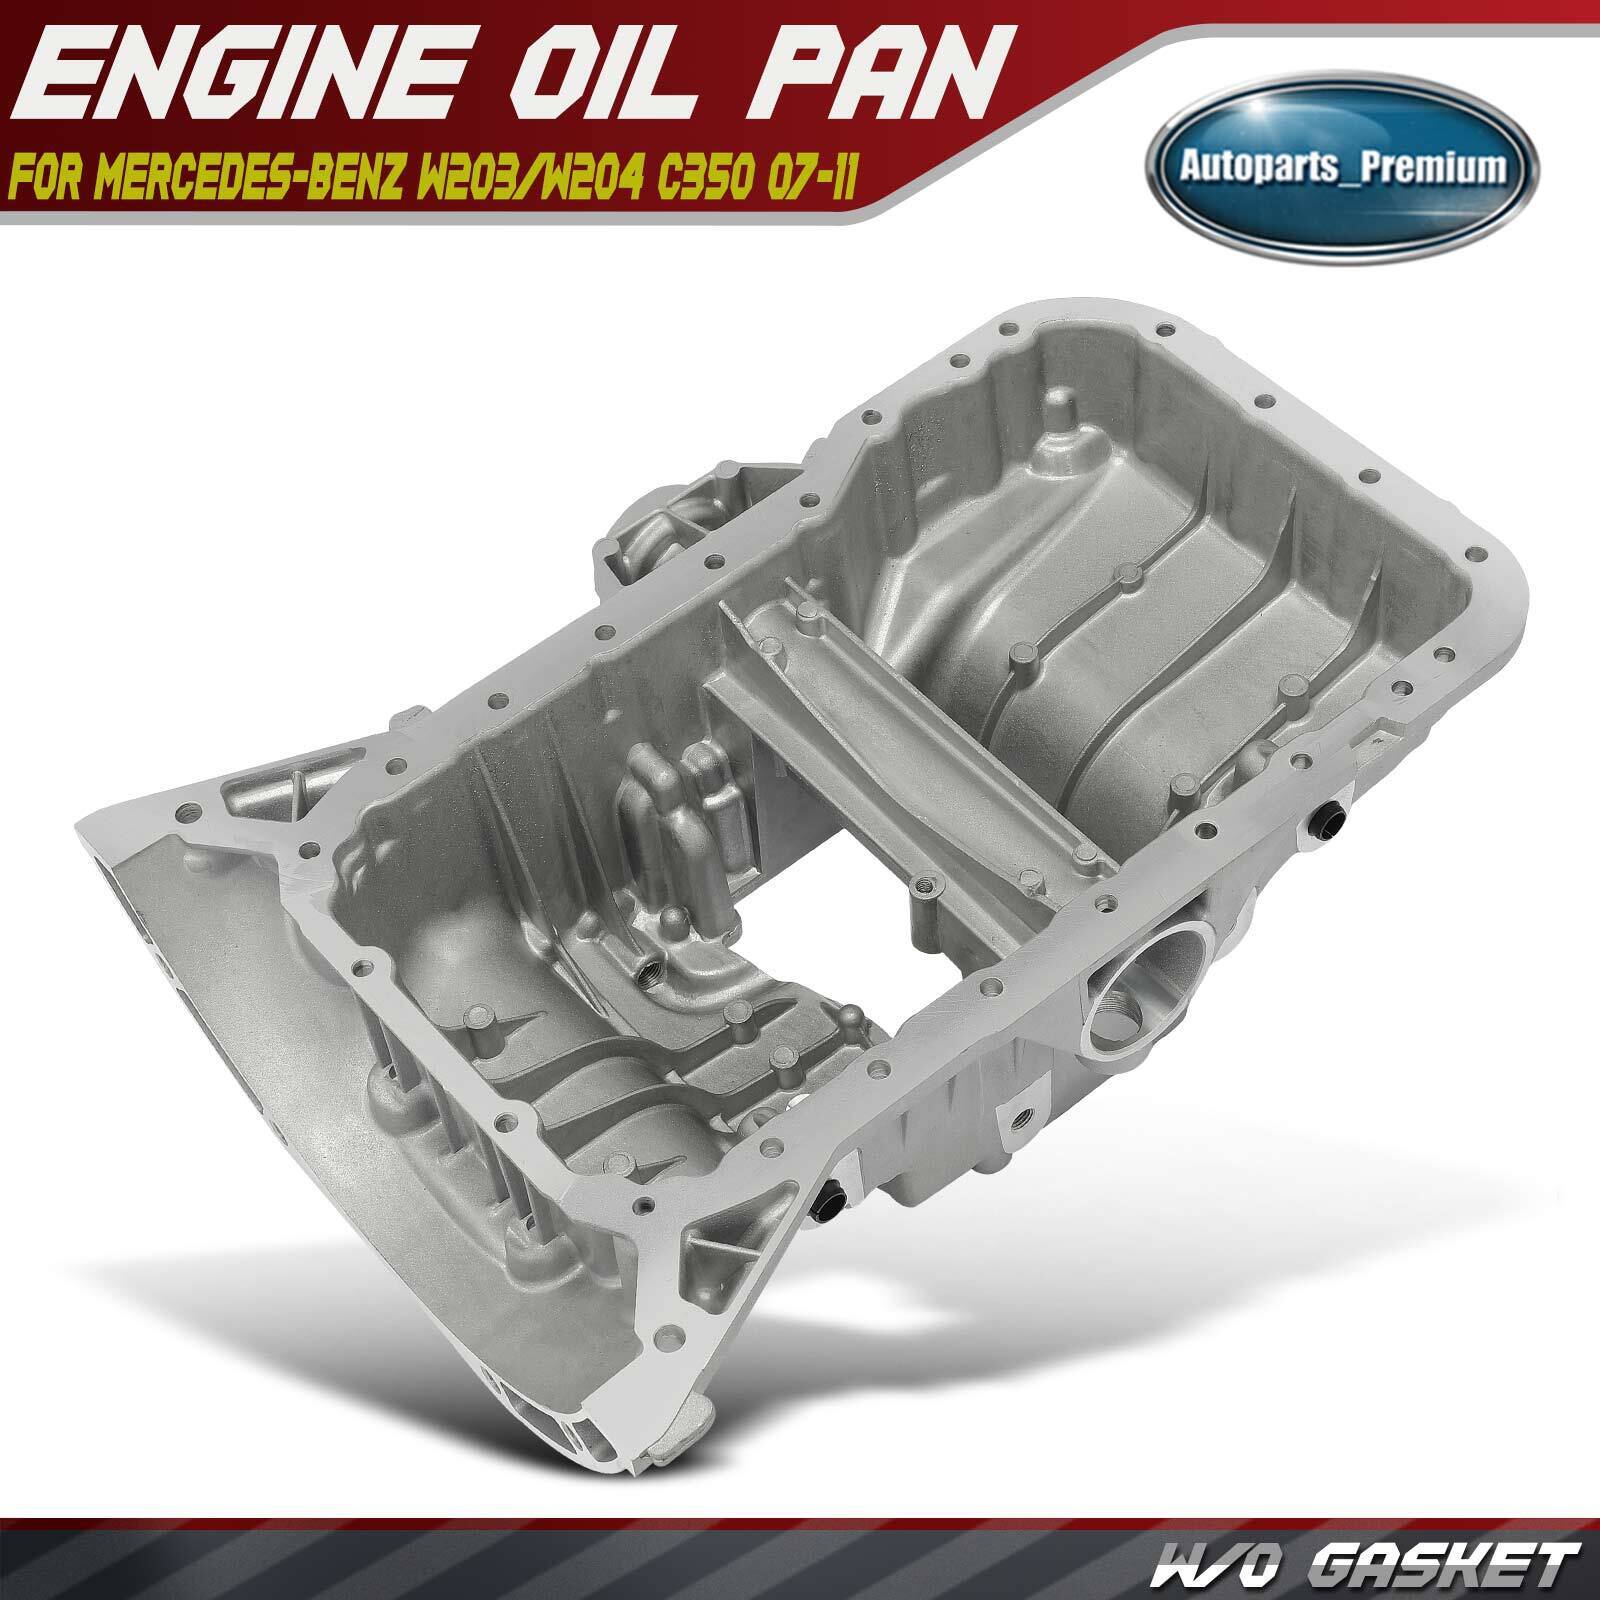 Engine Oil Pan for Mercedes-Benz W203/W204 C350 07-11 C230 C280 C300 W212 E350